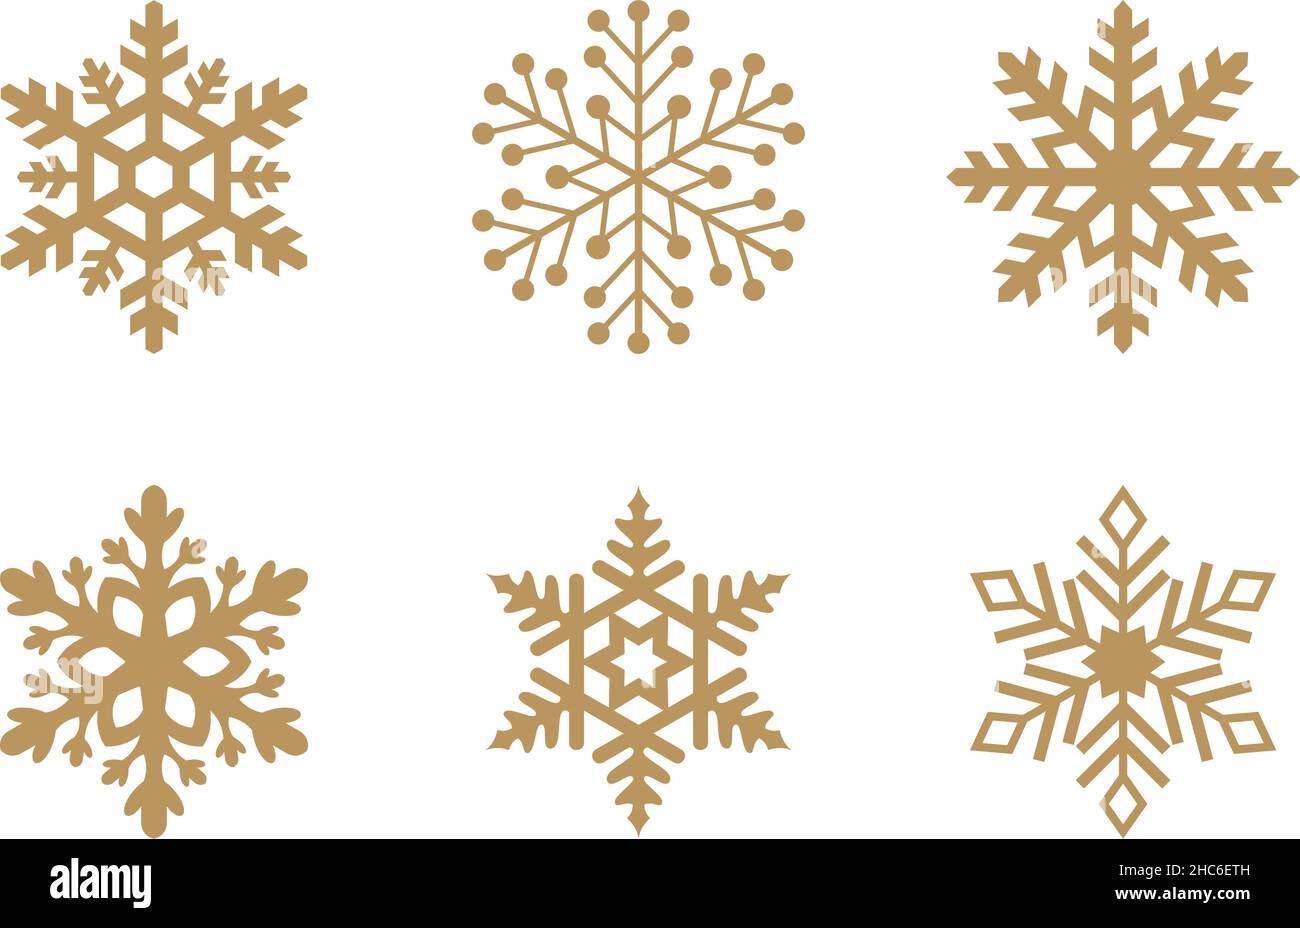 Goldene frostige abstrakte Schneeflocken-Symbole auf weißem Hintergrund. Fein gestaltete Gold Frosty Schneeflocken-Muster als Vektor. Stock Vektor